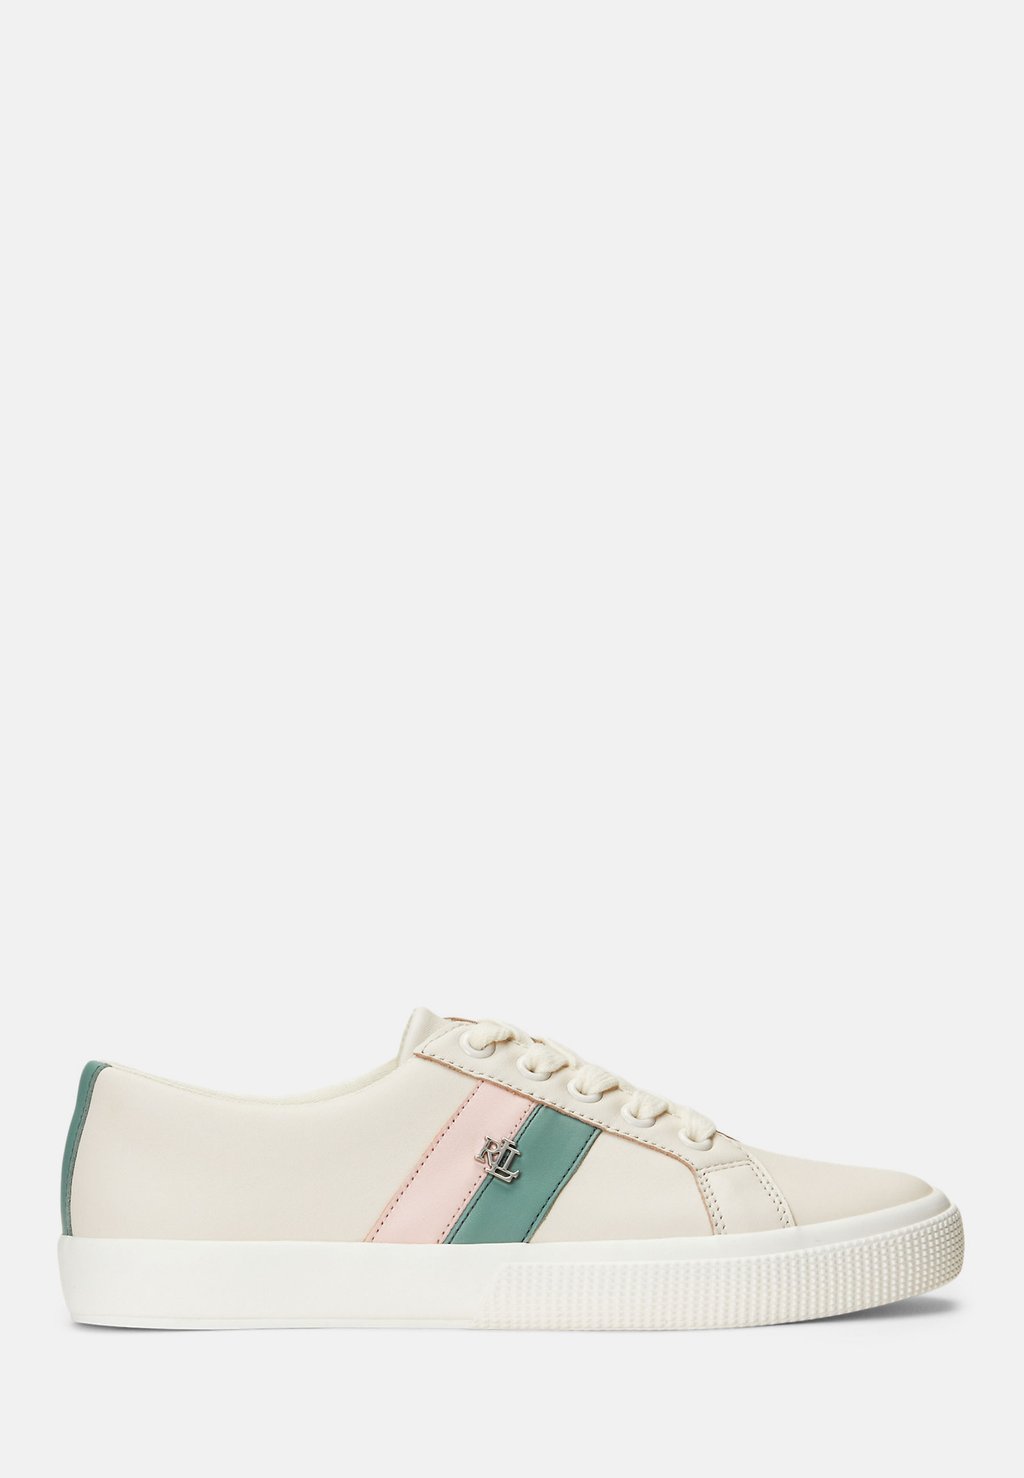 Кроссовки низкие JANSON TOP Lauren Ralph Lauren, цвет soft white/soft green/pink opal